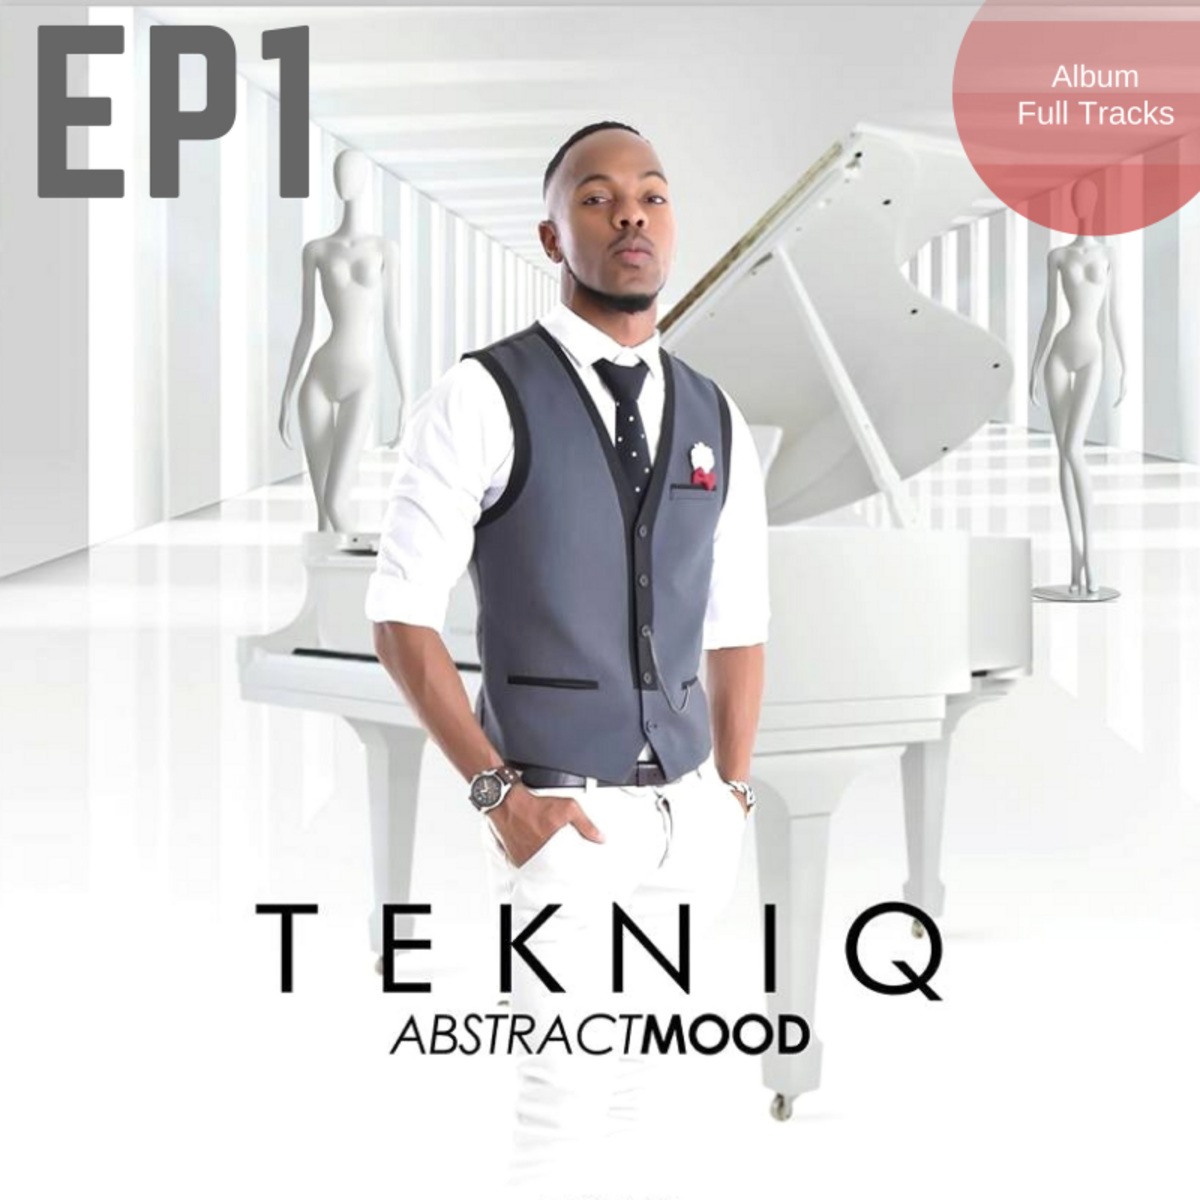 Tekniq - Abstract Mood Album EP1 / Abstract Mood Music